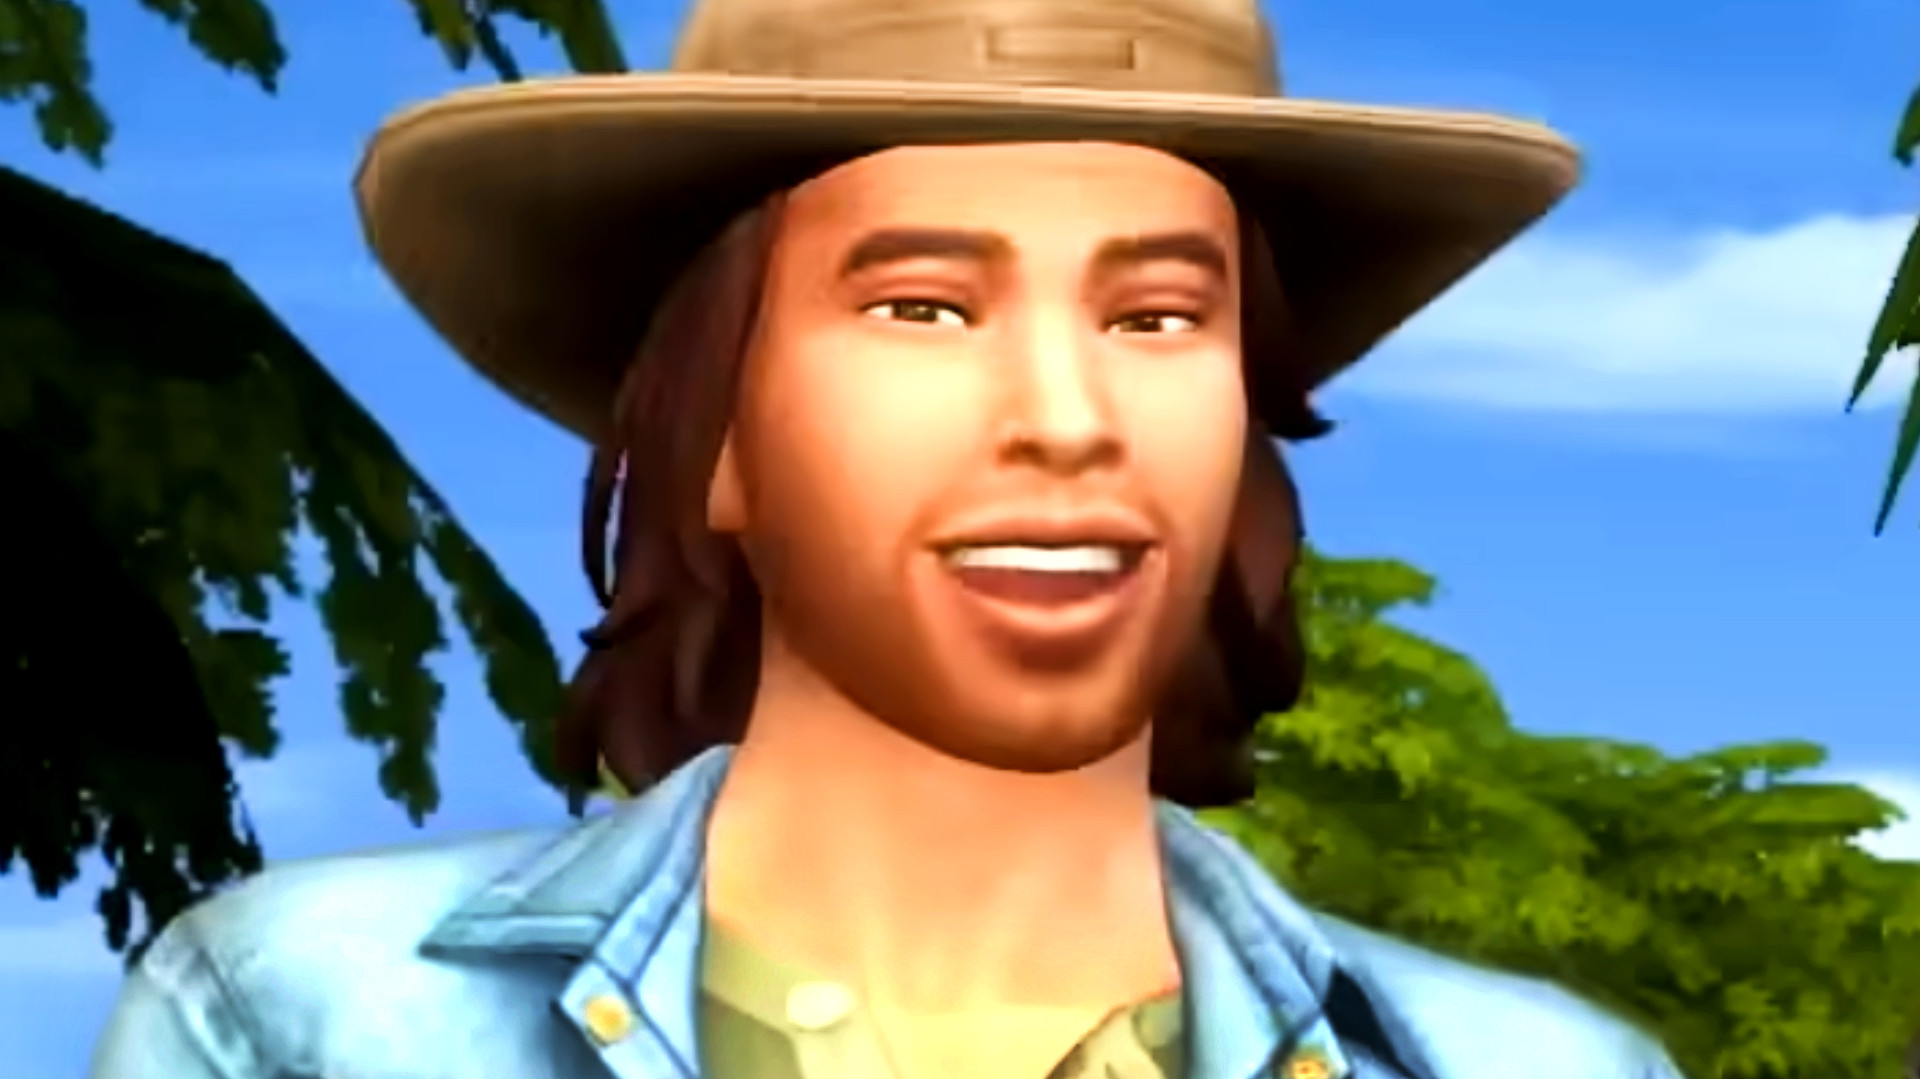 Sims 4 Baixar Última Versão – {Atualizado Em 2023}